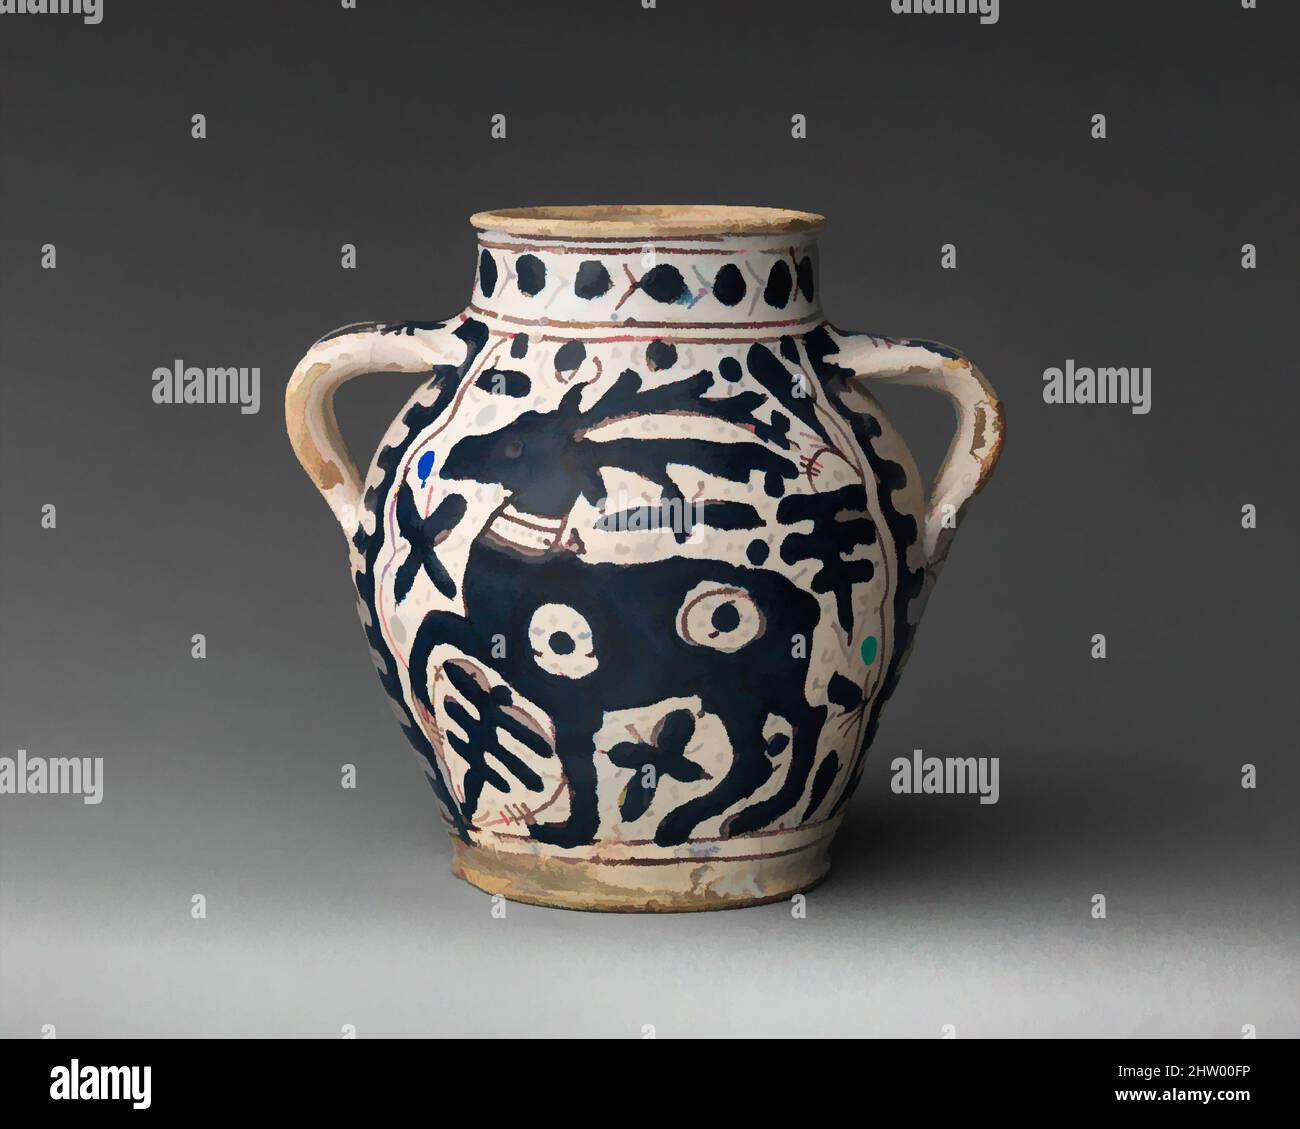 Ceramiche fiorentine immagini e fotografie stock ad alta risoluzione - Alamy